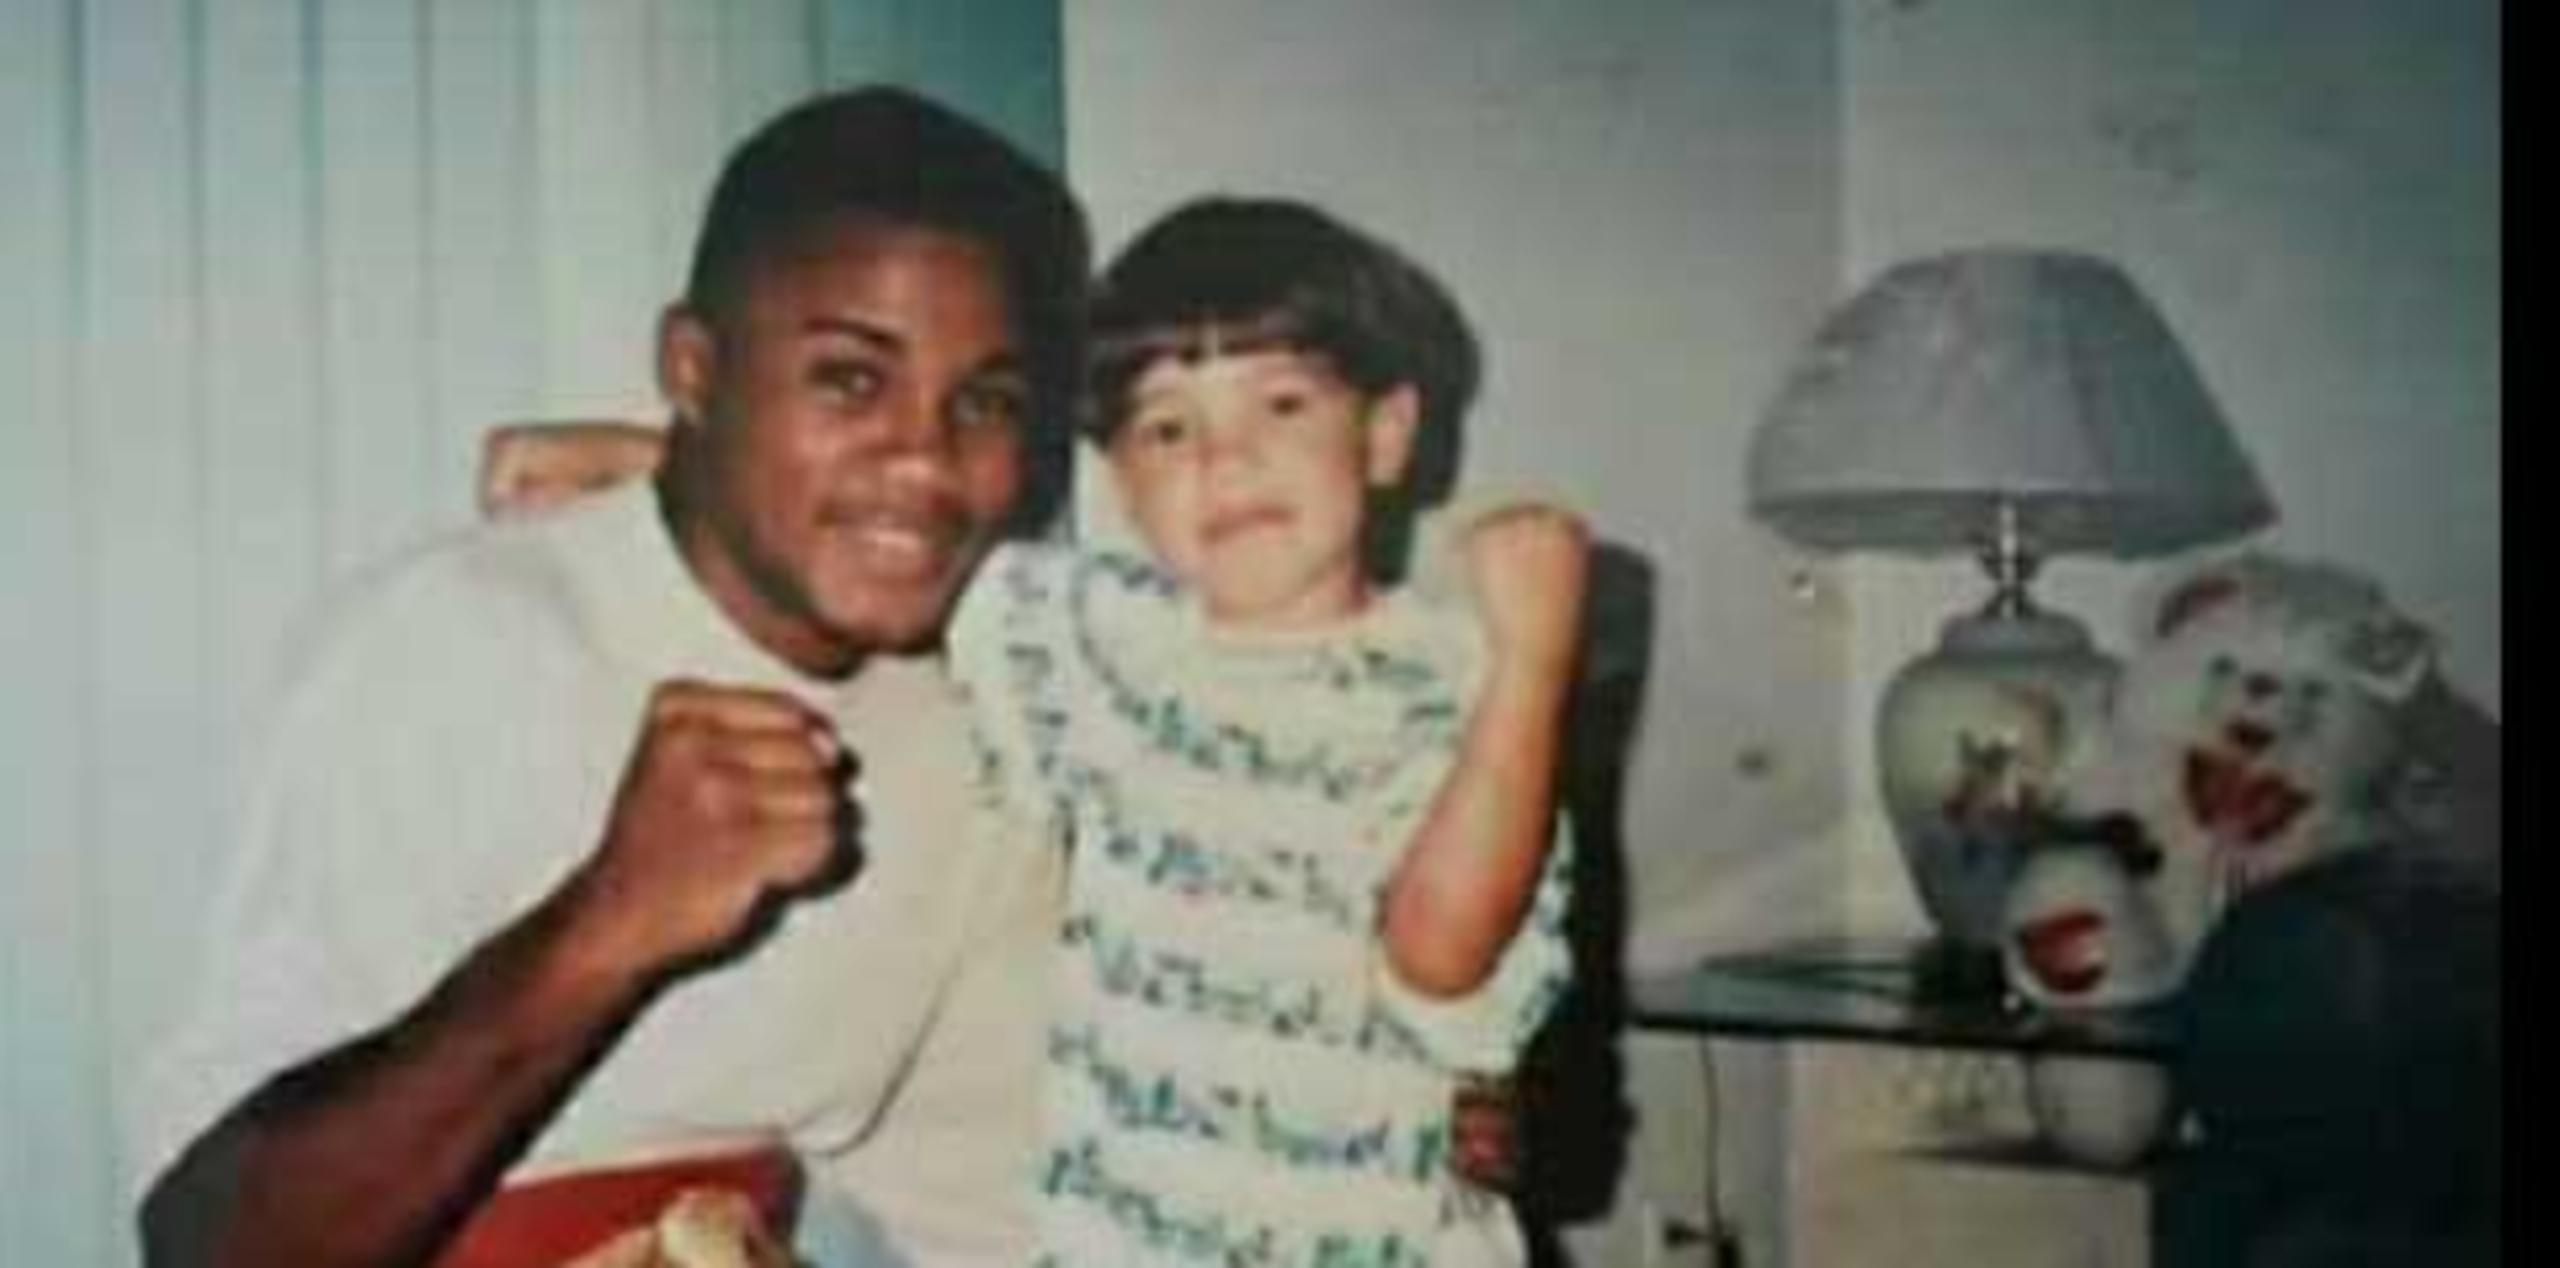 Imagen del vídeo donde se ve a un niño identificado como Prichard Colón junto al entonces campeón Félix "Tito" Trinidad. (Youtube)